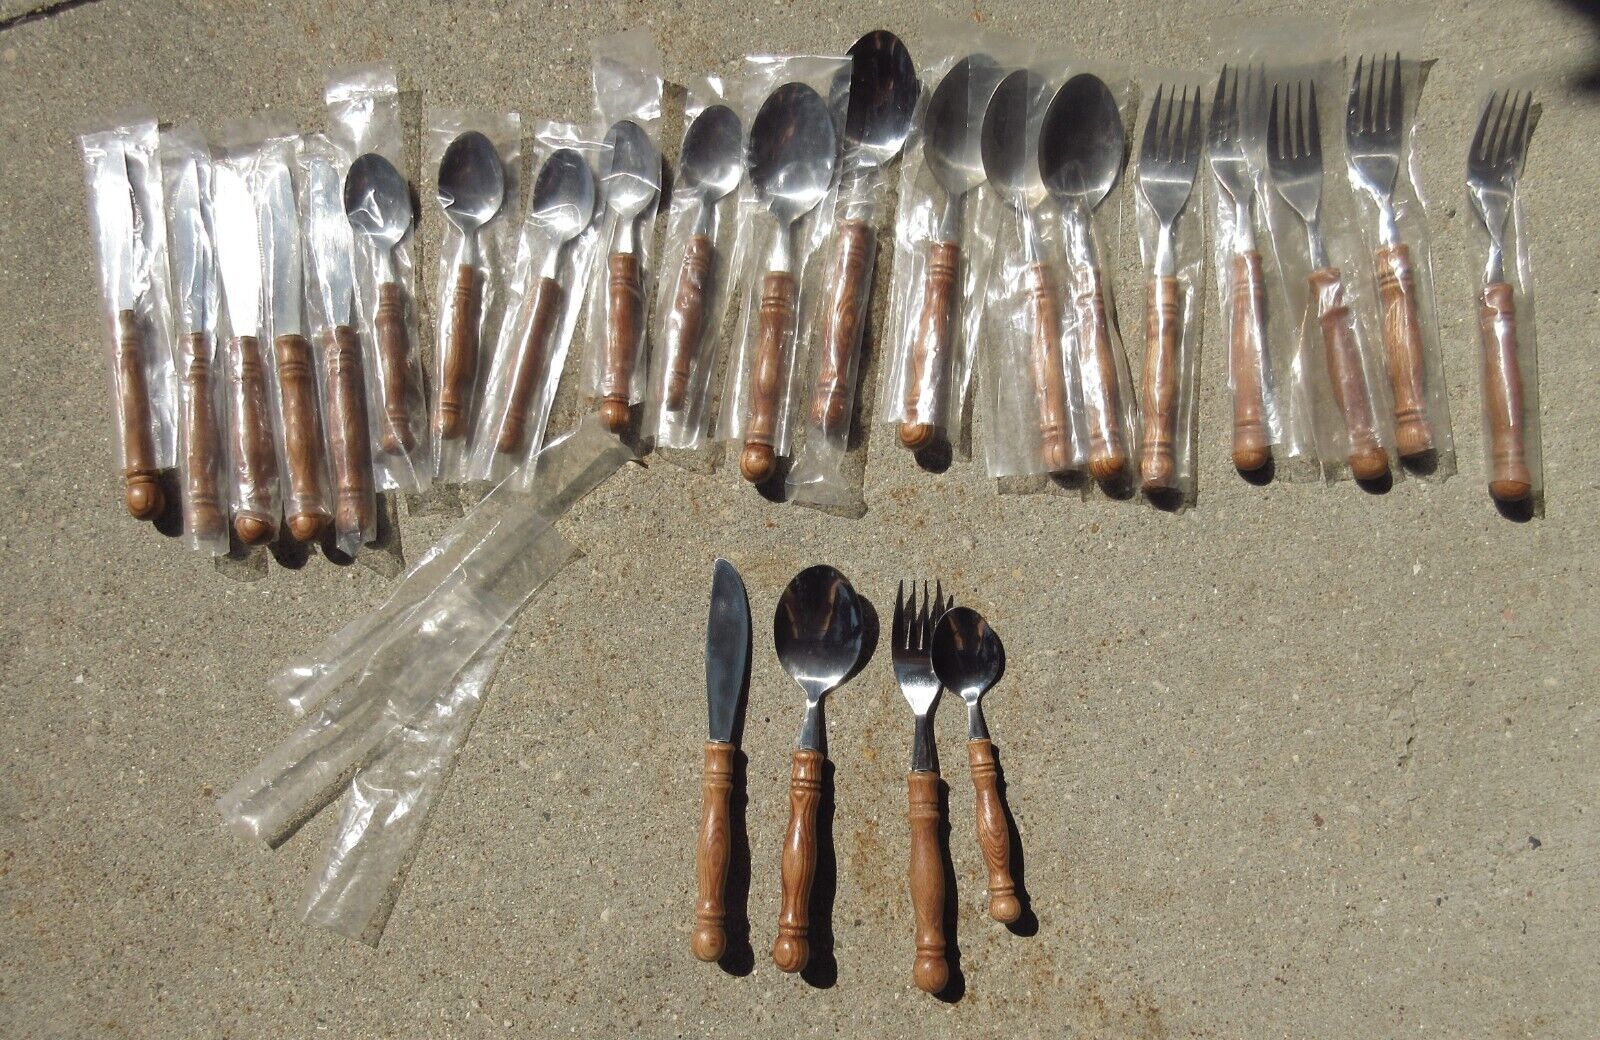 24 NEW UNUSED Vintage Lifetime Old Homestead Fork Spoon Knife 6 Place Settings